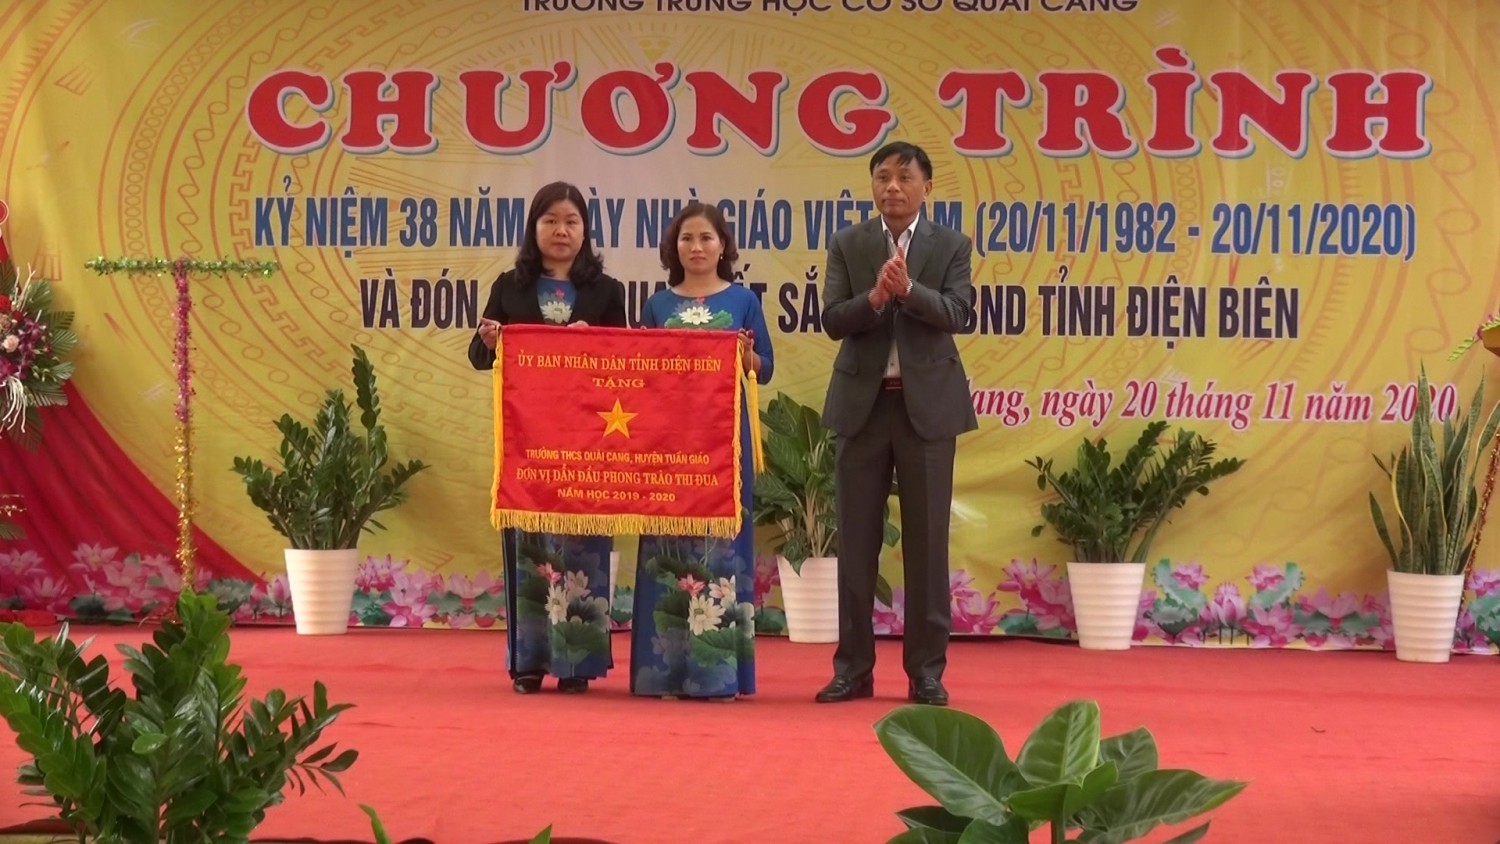  Đồng chí Vũ Văn Đức - Chủ tịch UBND huyện trao cờ thi đua xuất sắc của UBND tỉnh cho trường THCS Quài Cang